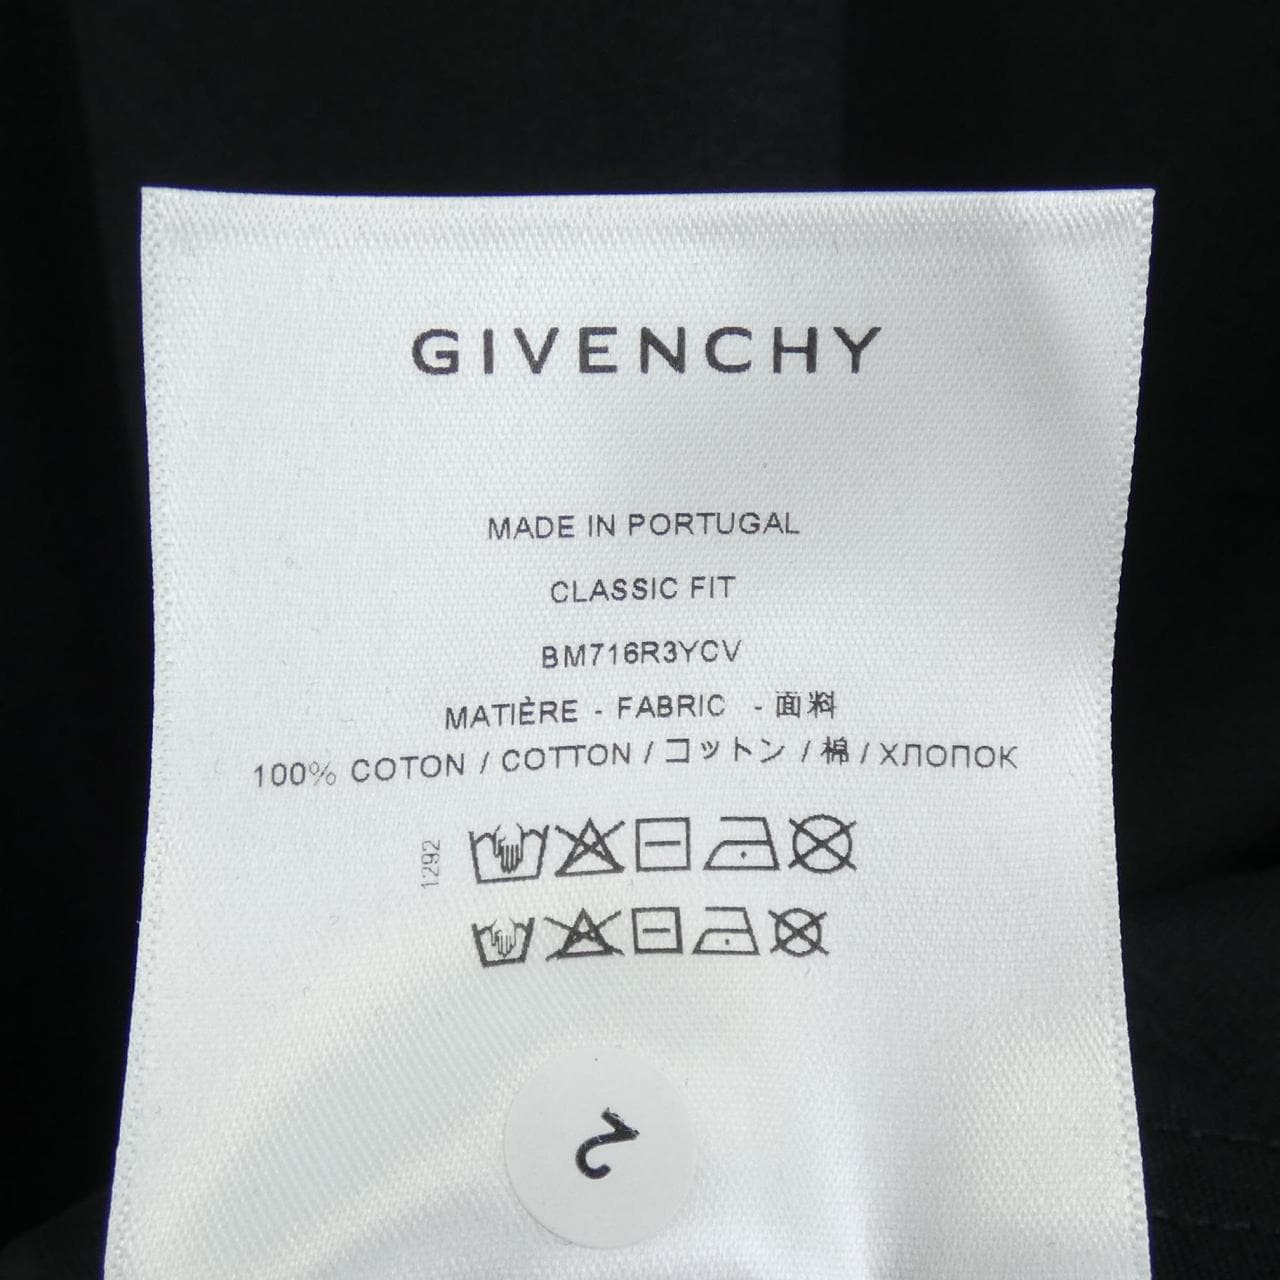 GIVENCHY GIVENCHY T-shirt